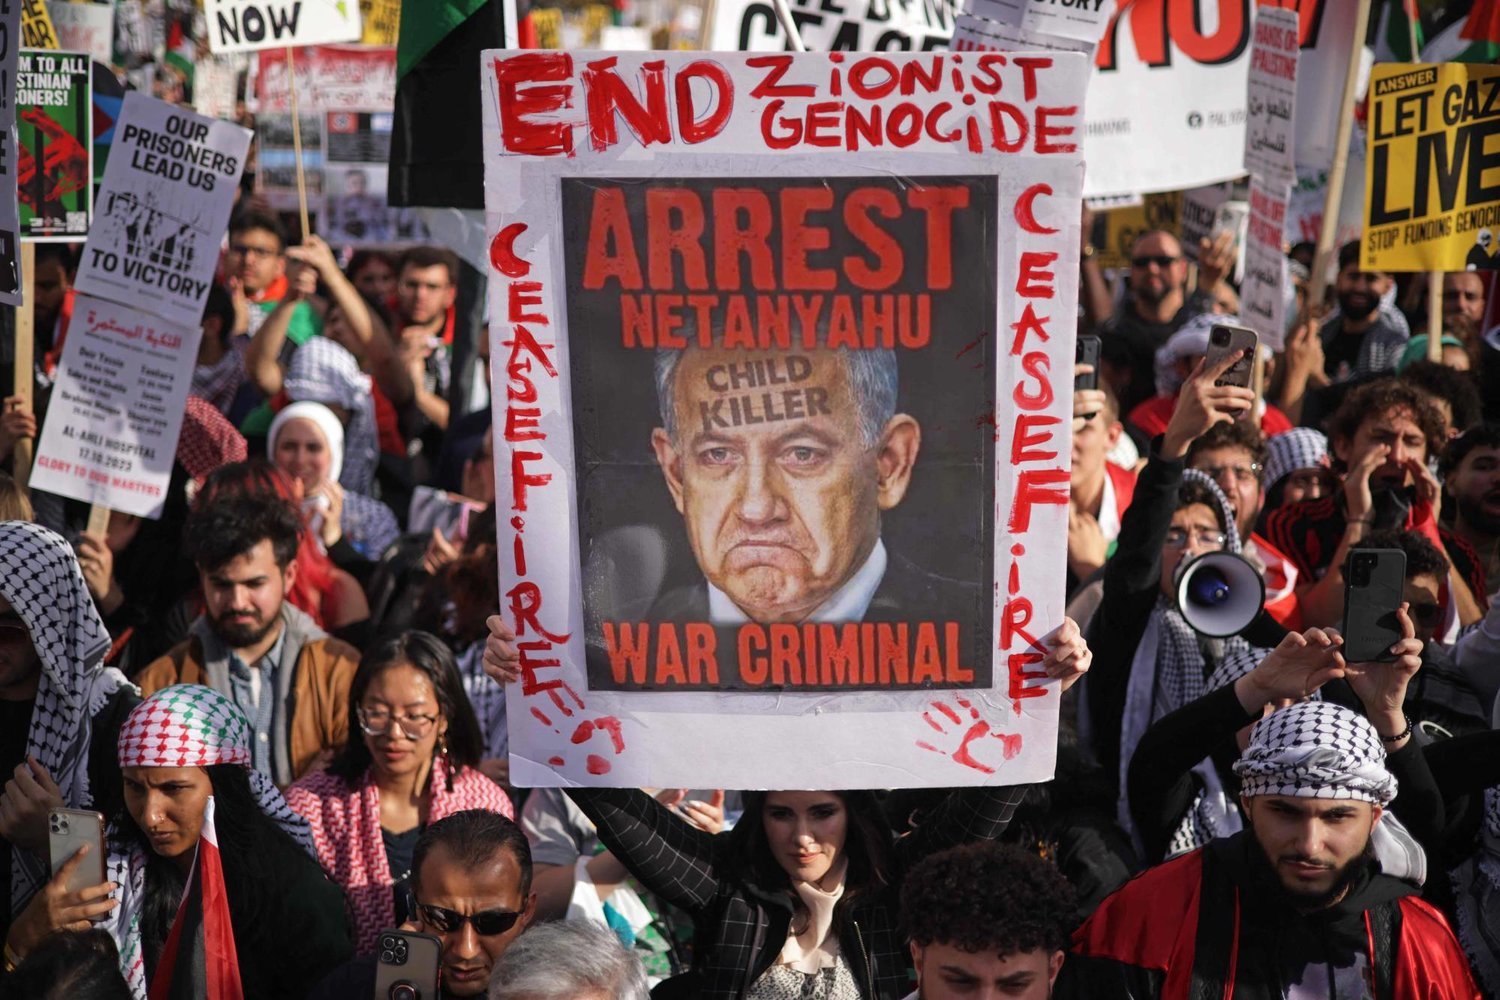 Washington’daki göstericiler ateşkes, Filistinli sivillerin korunması ve İsrail Başbakanı'nın hesap vermesini talep ediyor (AFP)